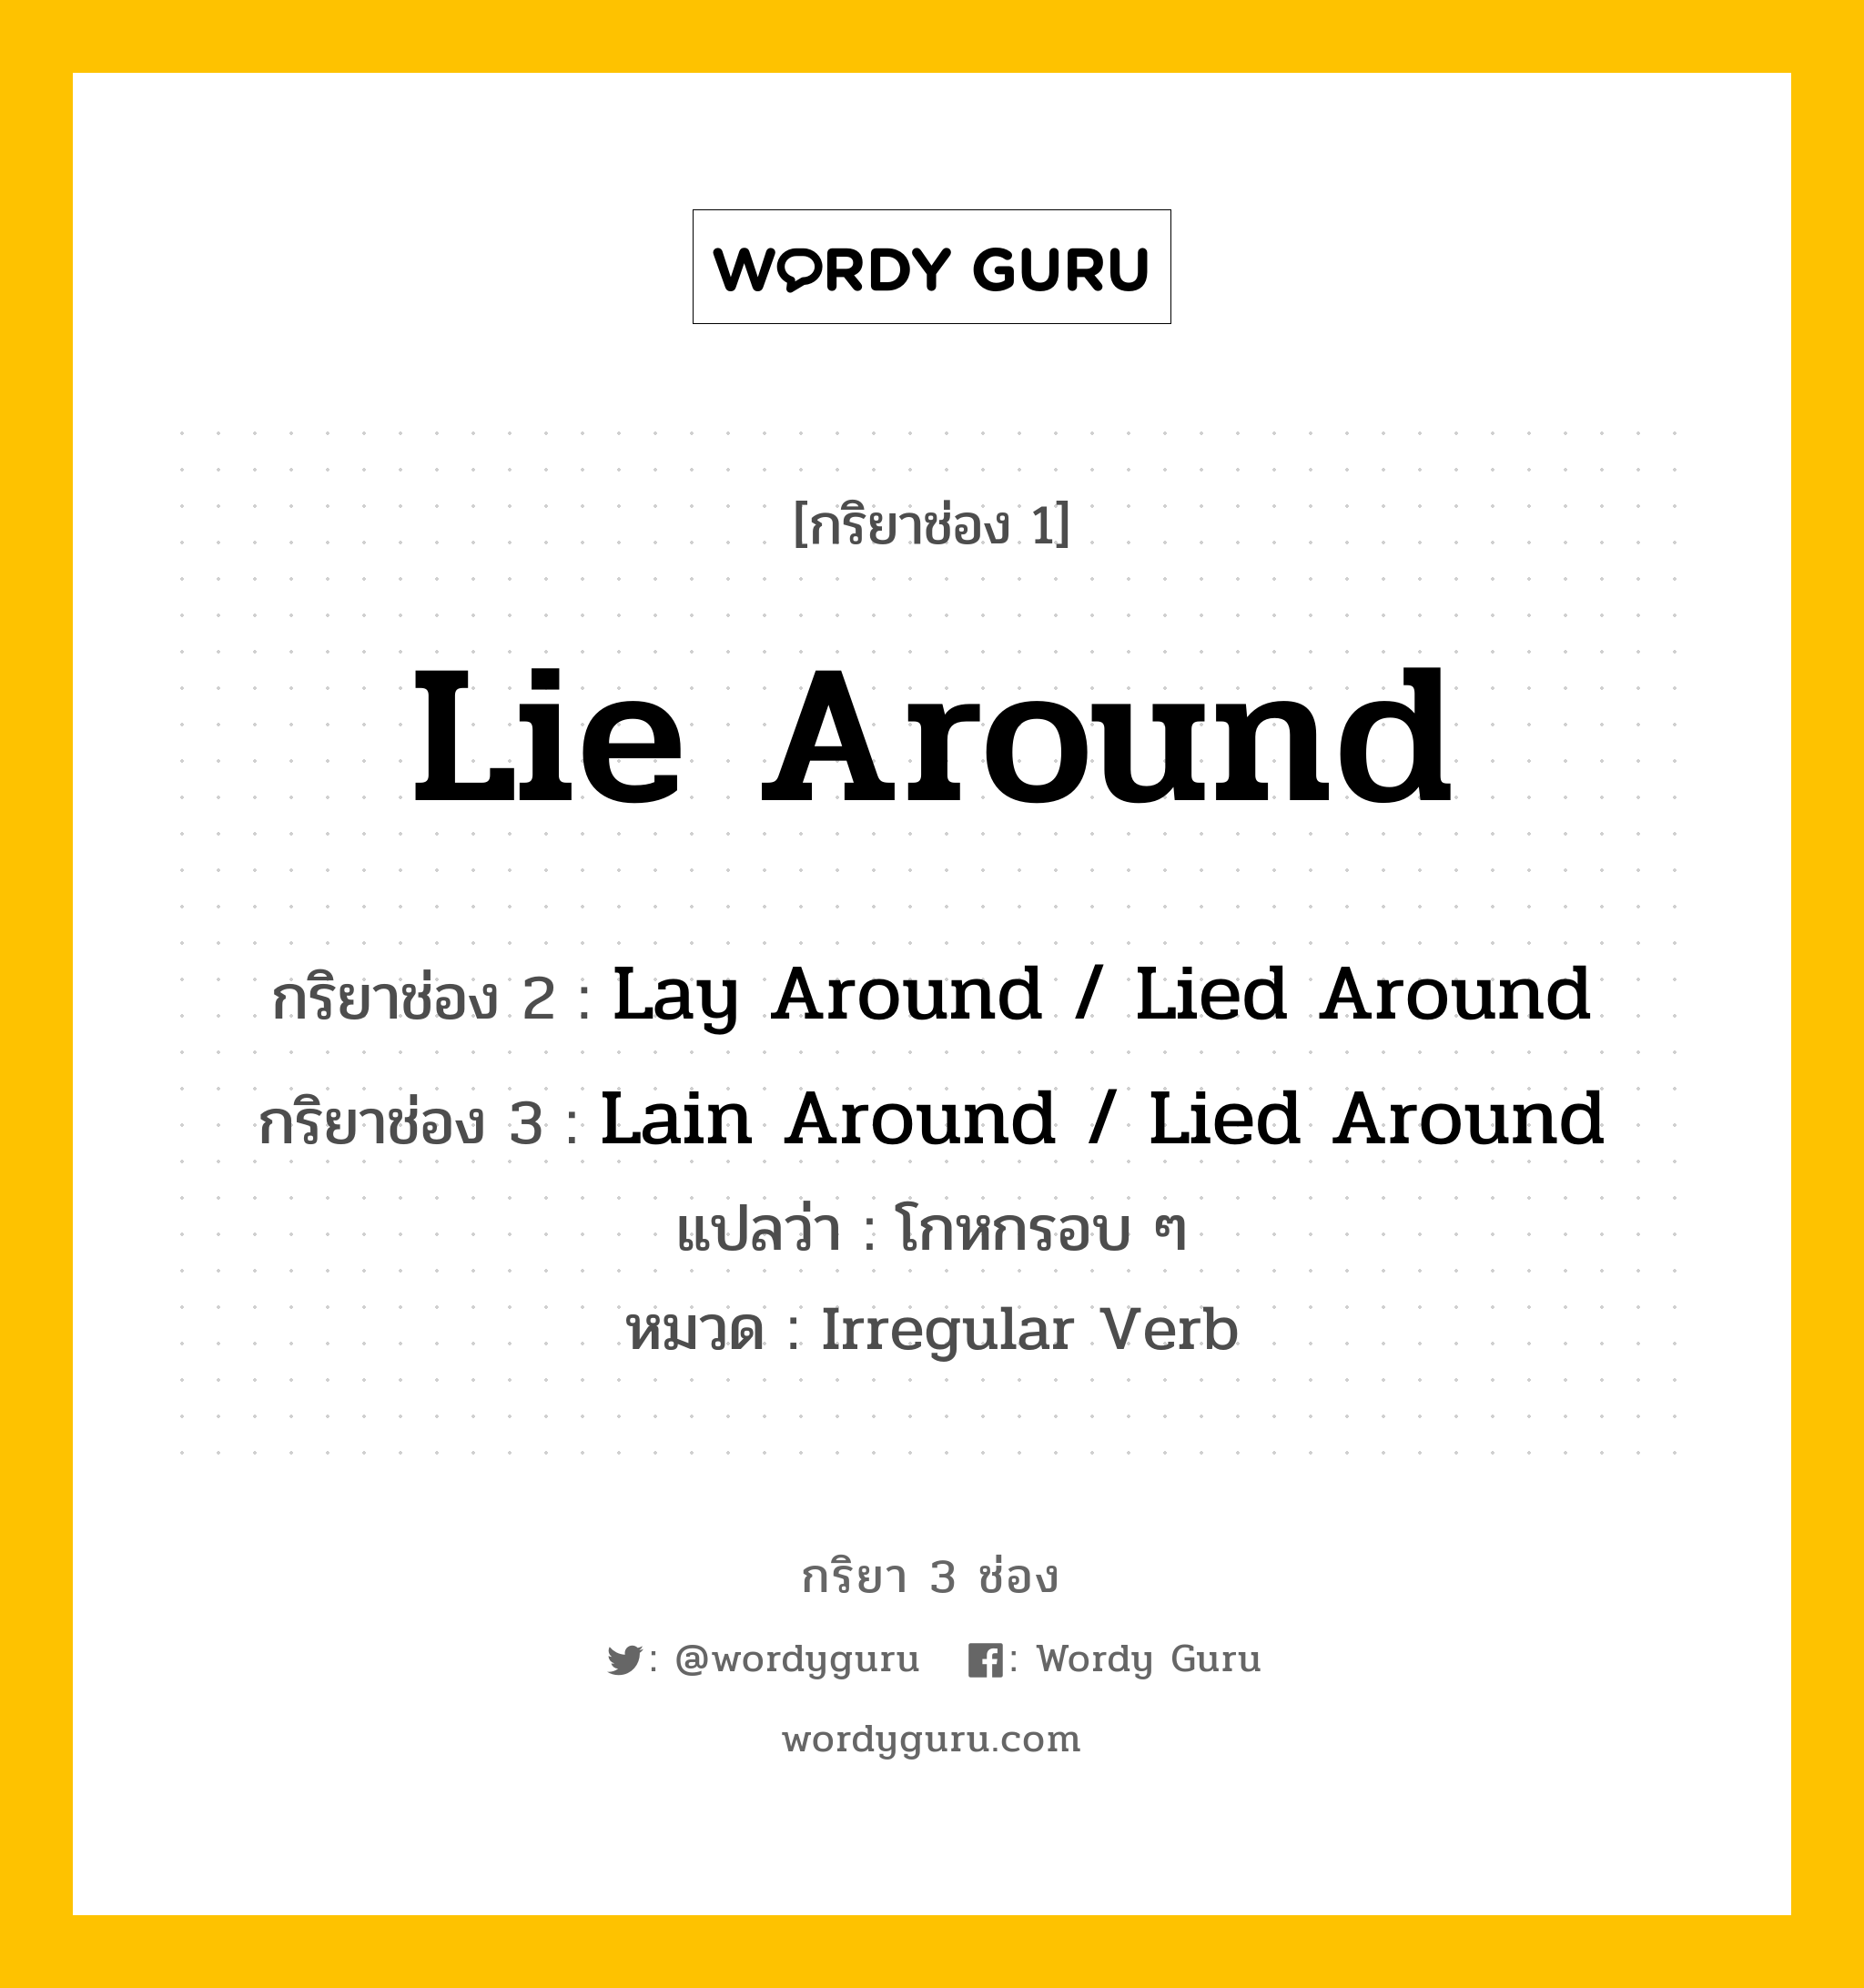 กริยา 3 ช่อง: Lie Around ช่อง 2 Lie Around ช่อง 3 คืออะไร, กริยาช่อง 1 Lie Around กริยาช่อง 2 Lay Around / Lied Around กริยาช่อง 3 Lain Around / Lied Around แปลว่า โกหกรอบ ๆ หมวด Irregular Verb หมวด Irregular Verb